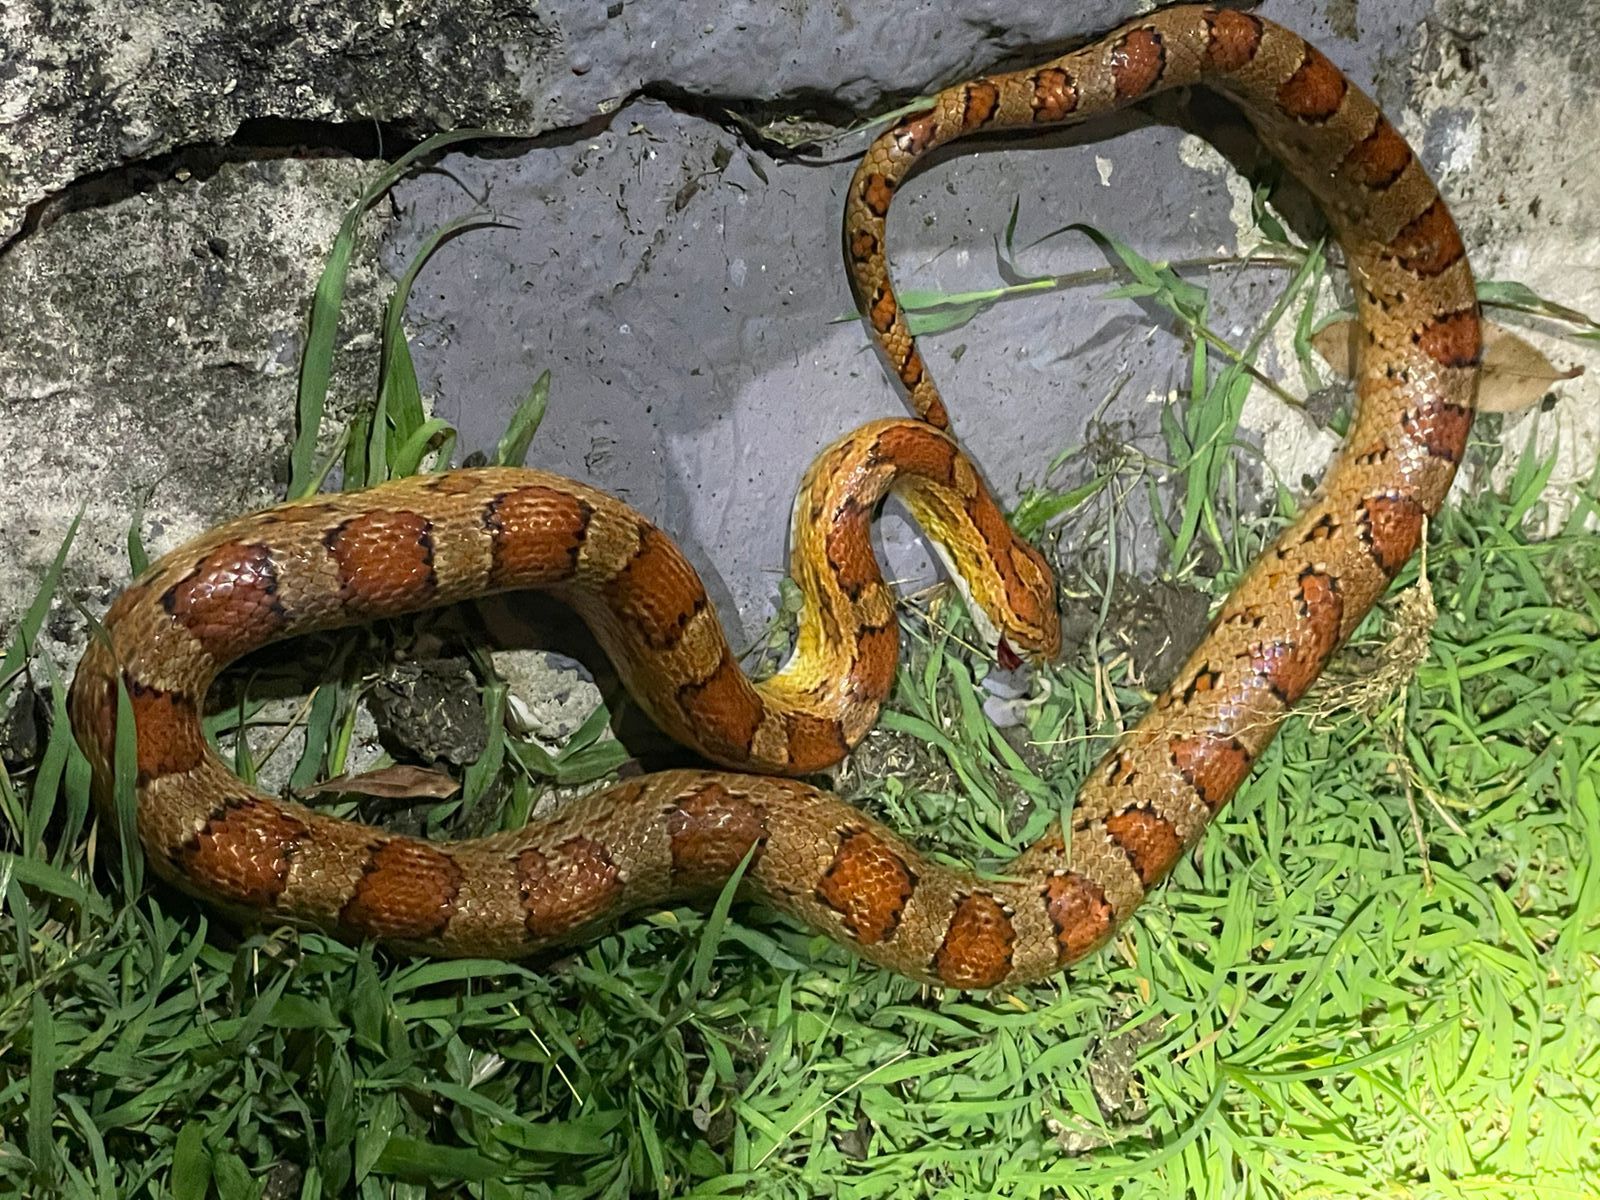     Un « serpent des blés » retrouvé dans un jardin à Saint-François

